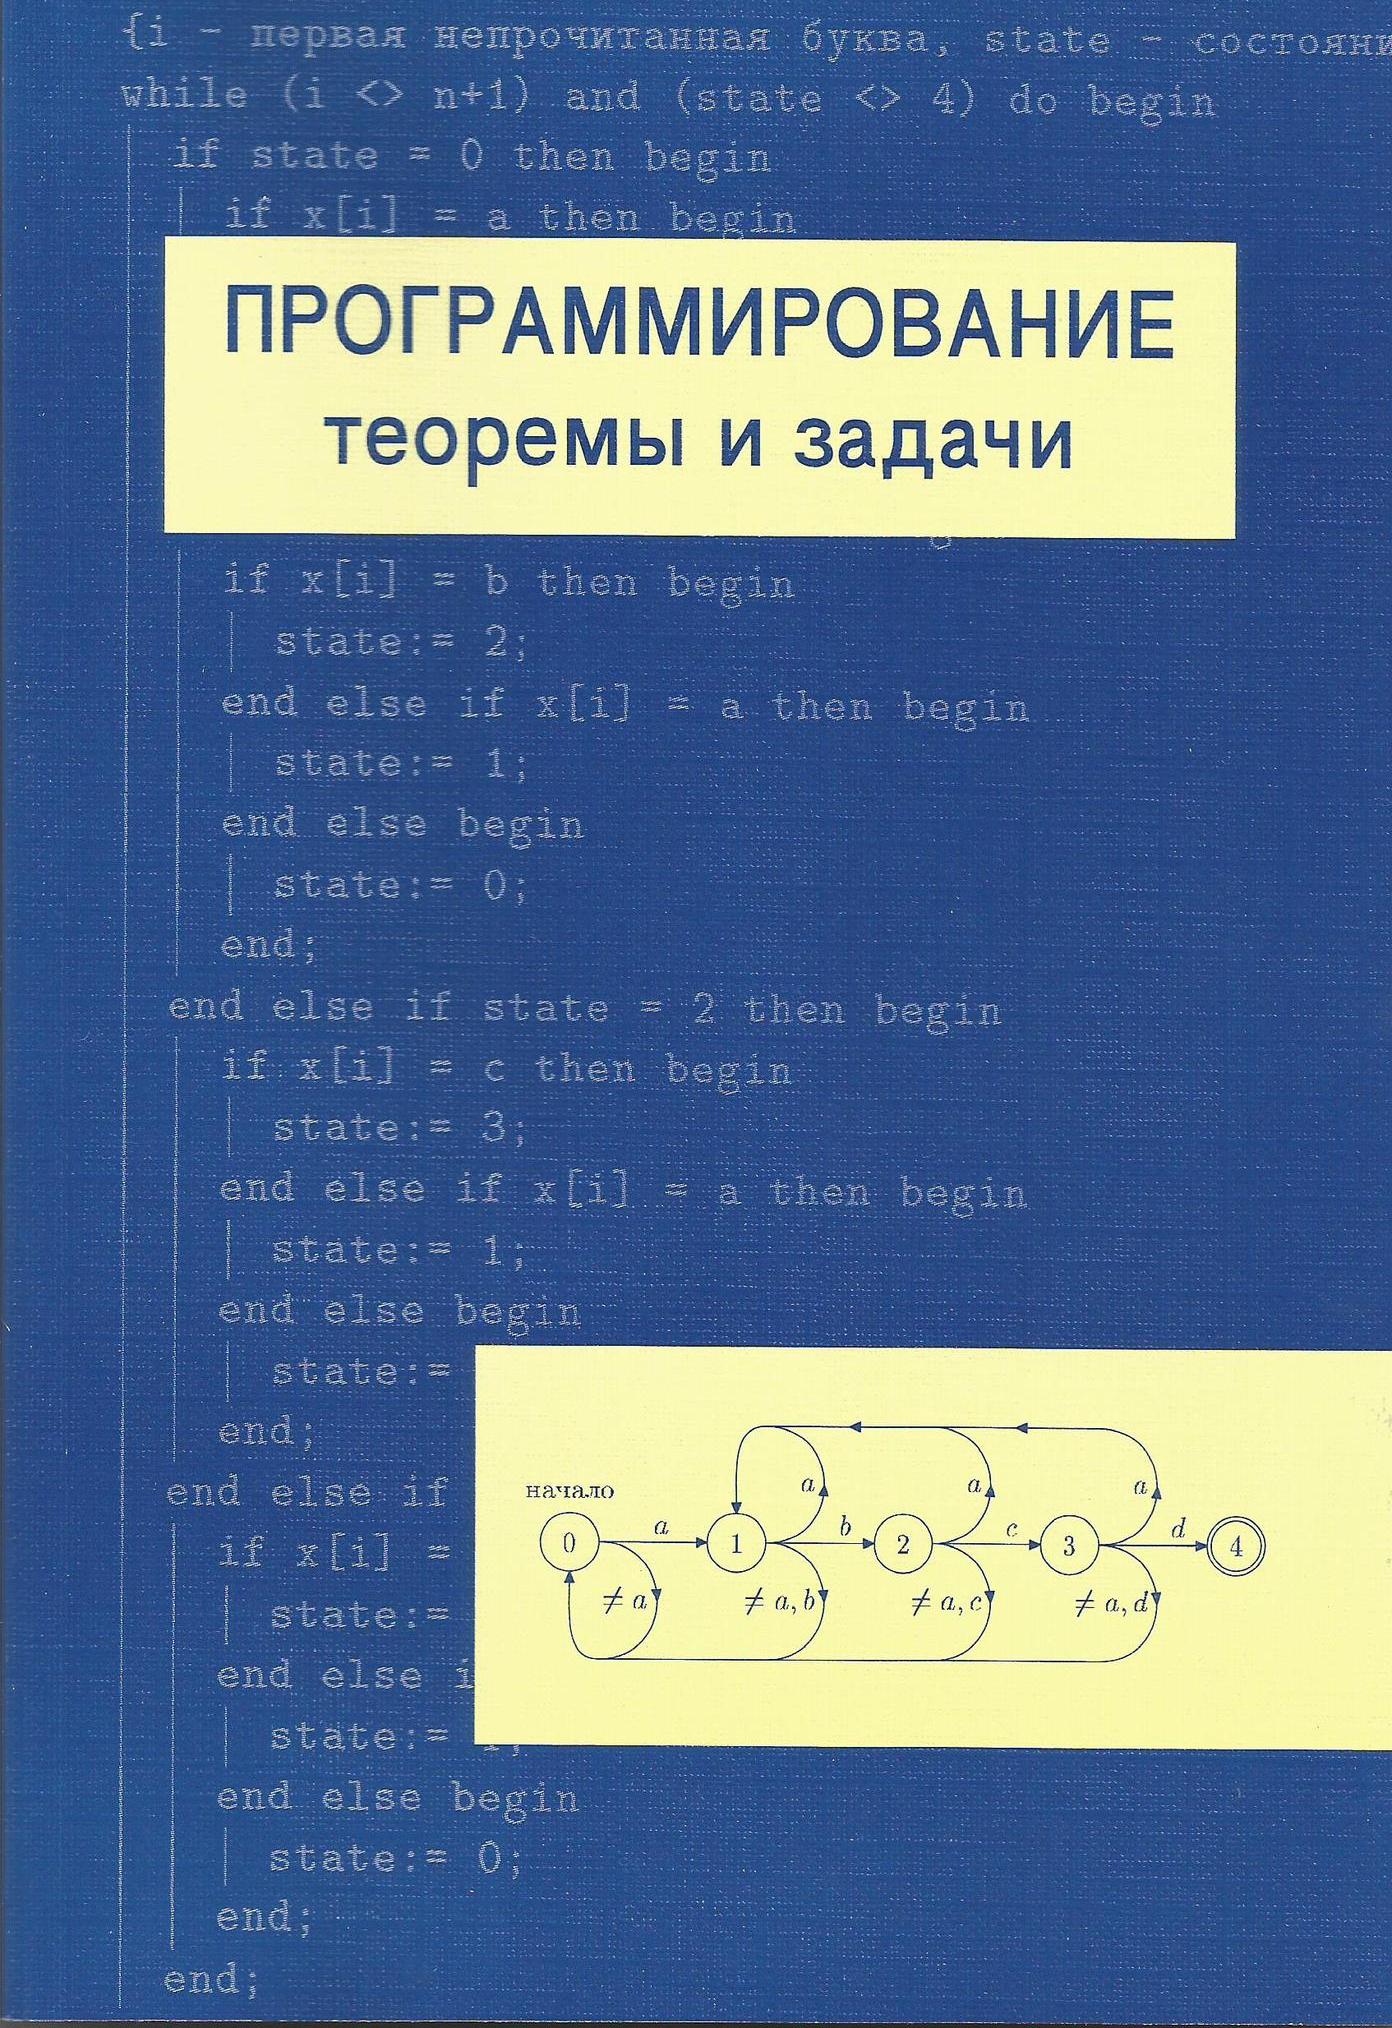 Программирование теоремы и задачи 2-е издание А. Шень 2004